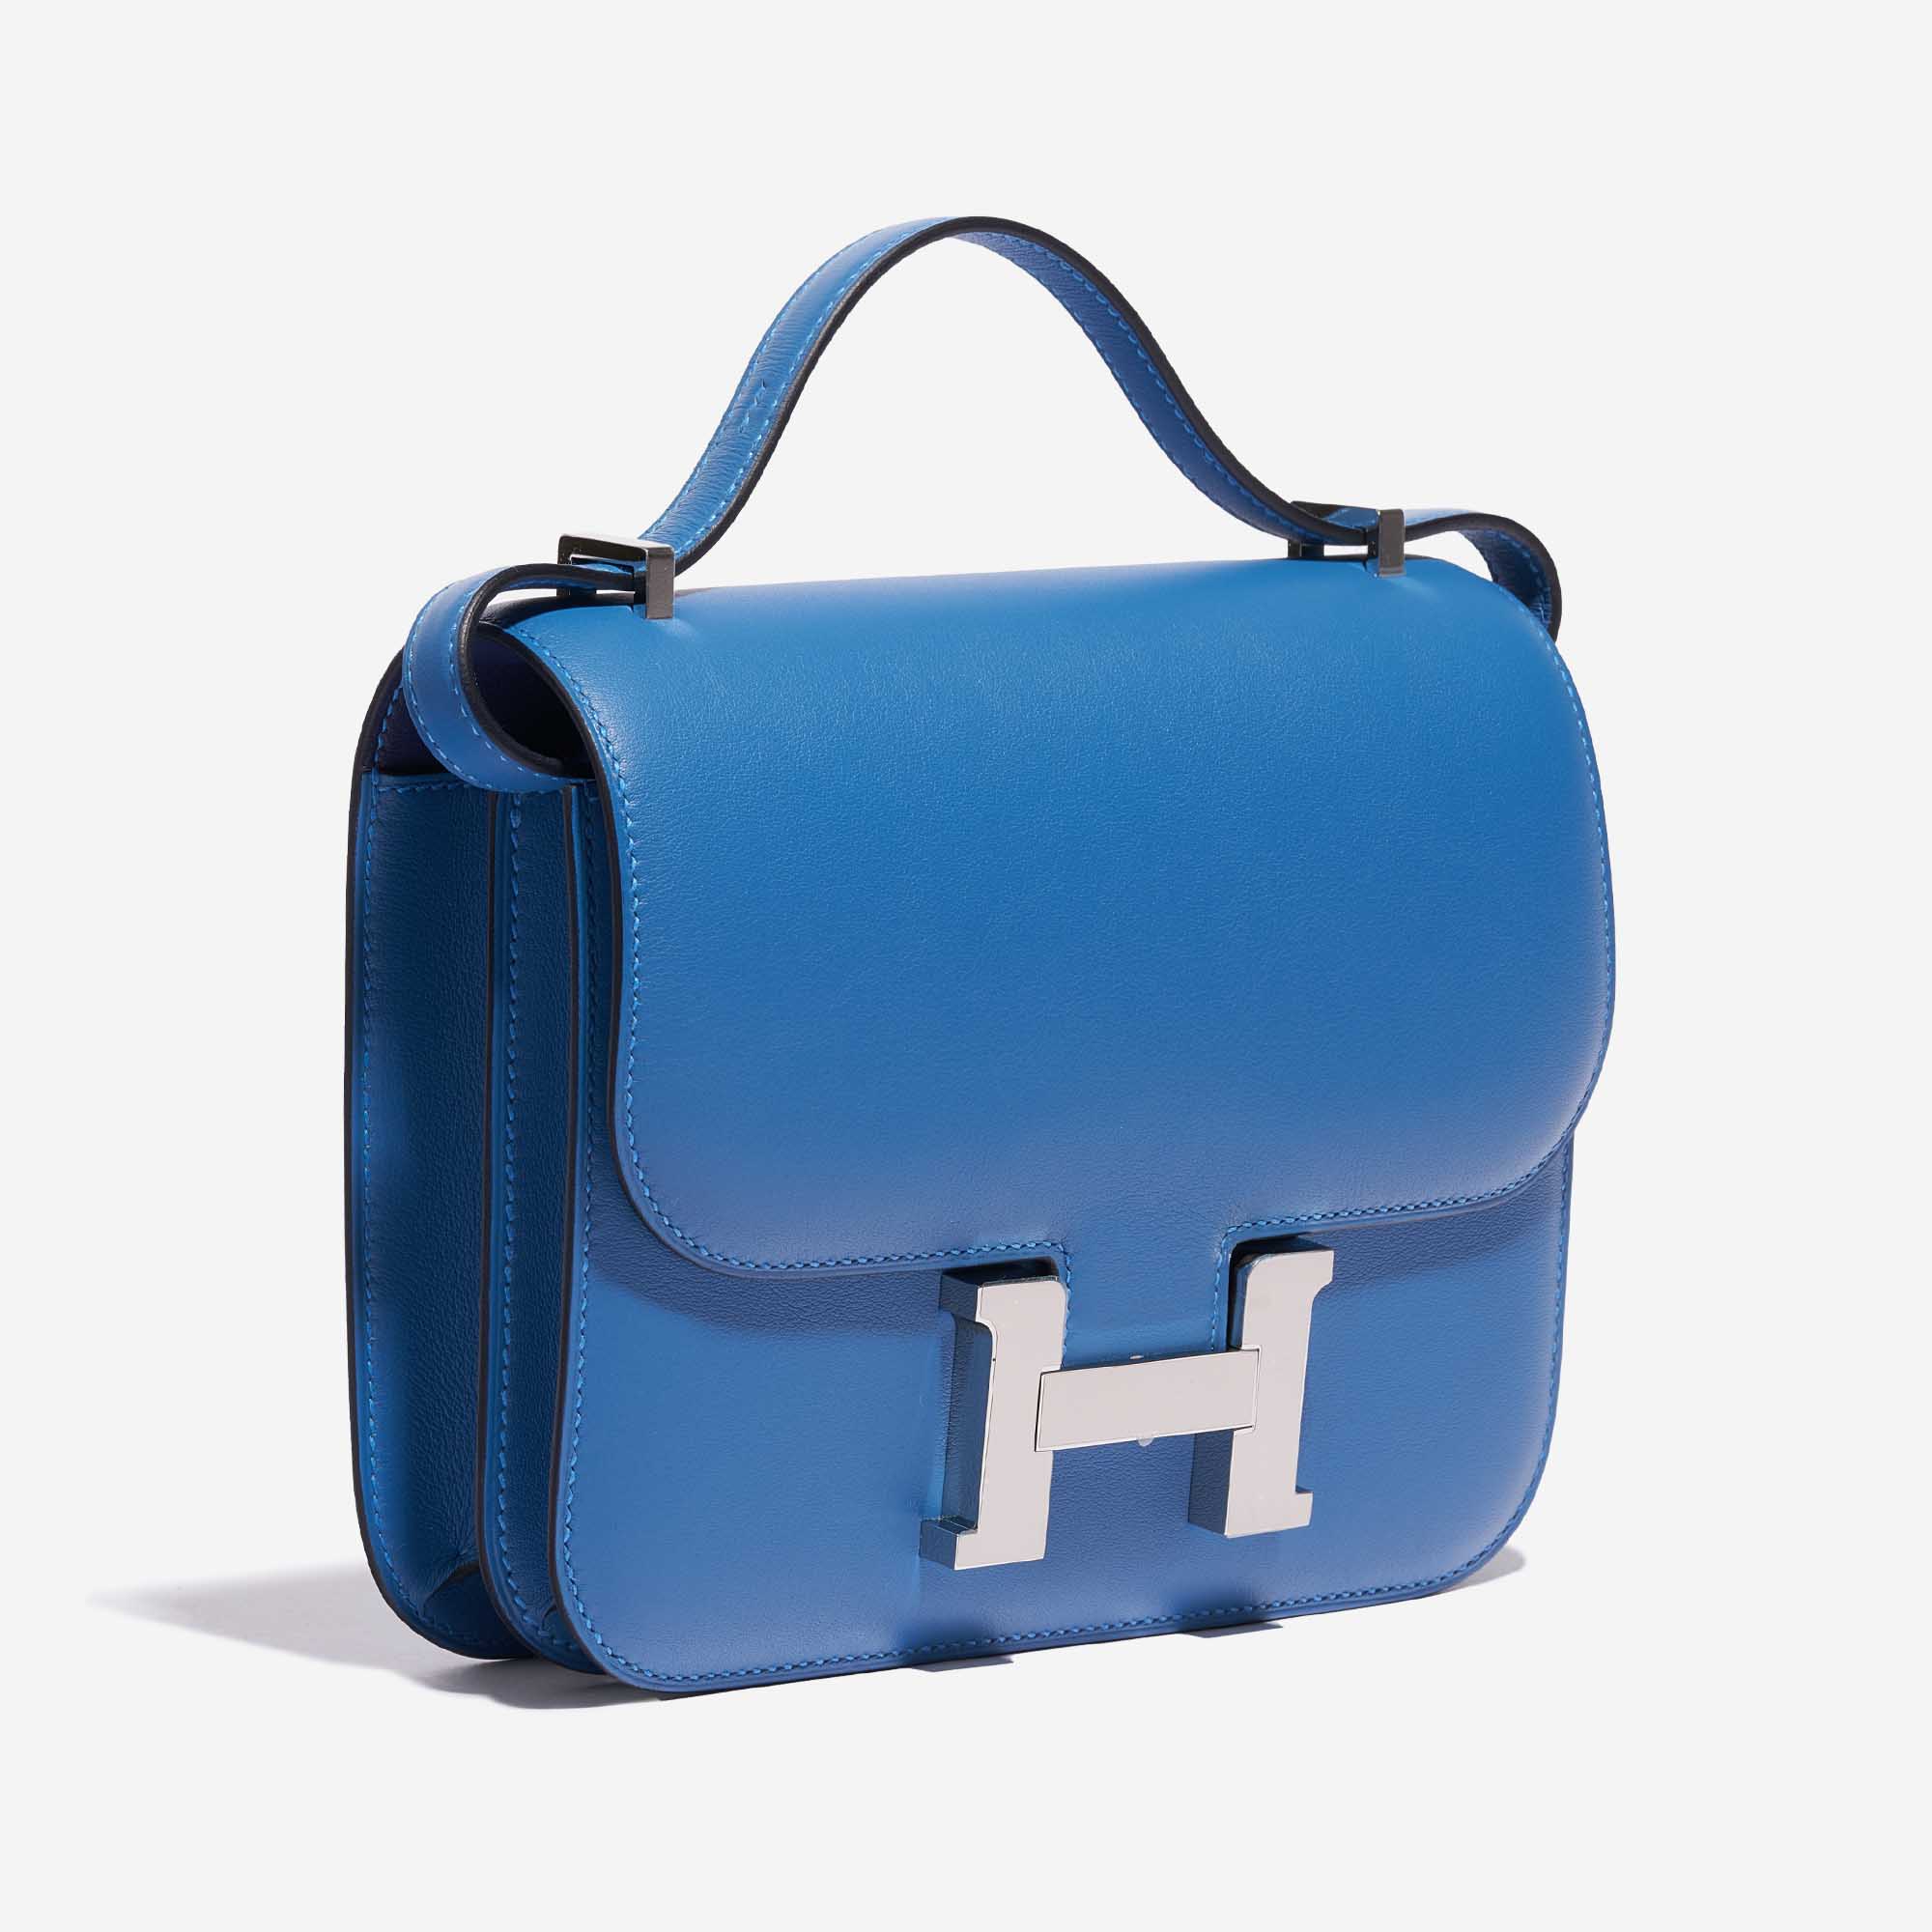 Sac Hermès d'occasion Constance 18 Swift Bleu Mykonos / Bleu Encre Bleu Côté Face | Vendez votre sac de créateur sur Saclab.com